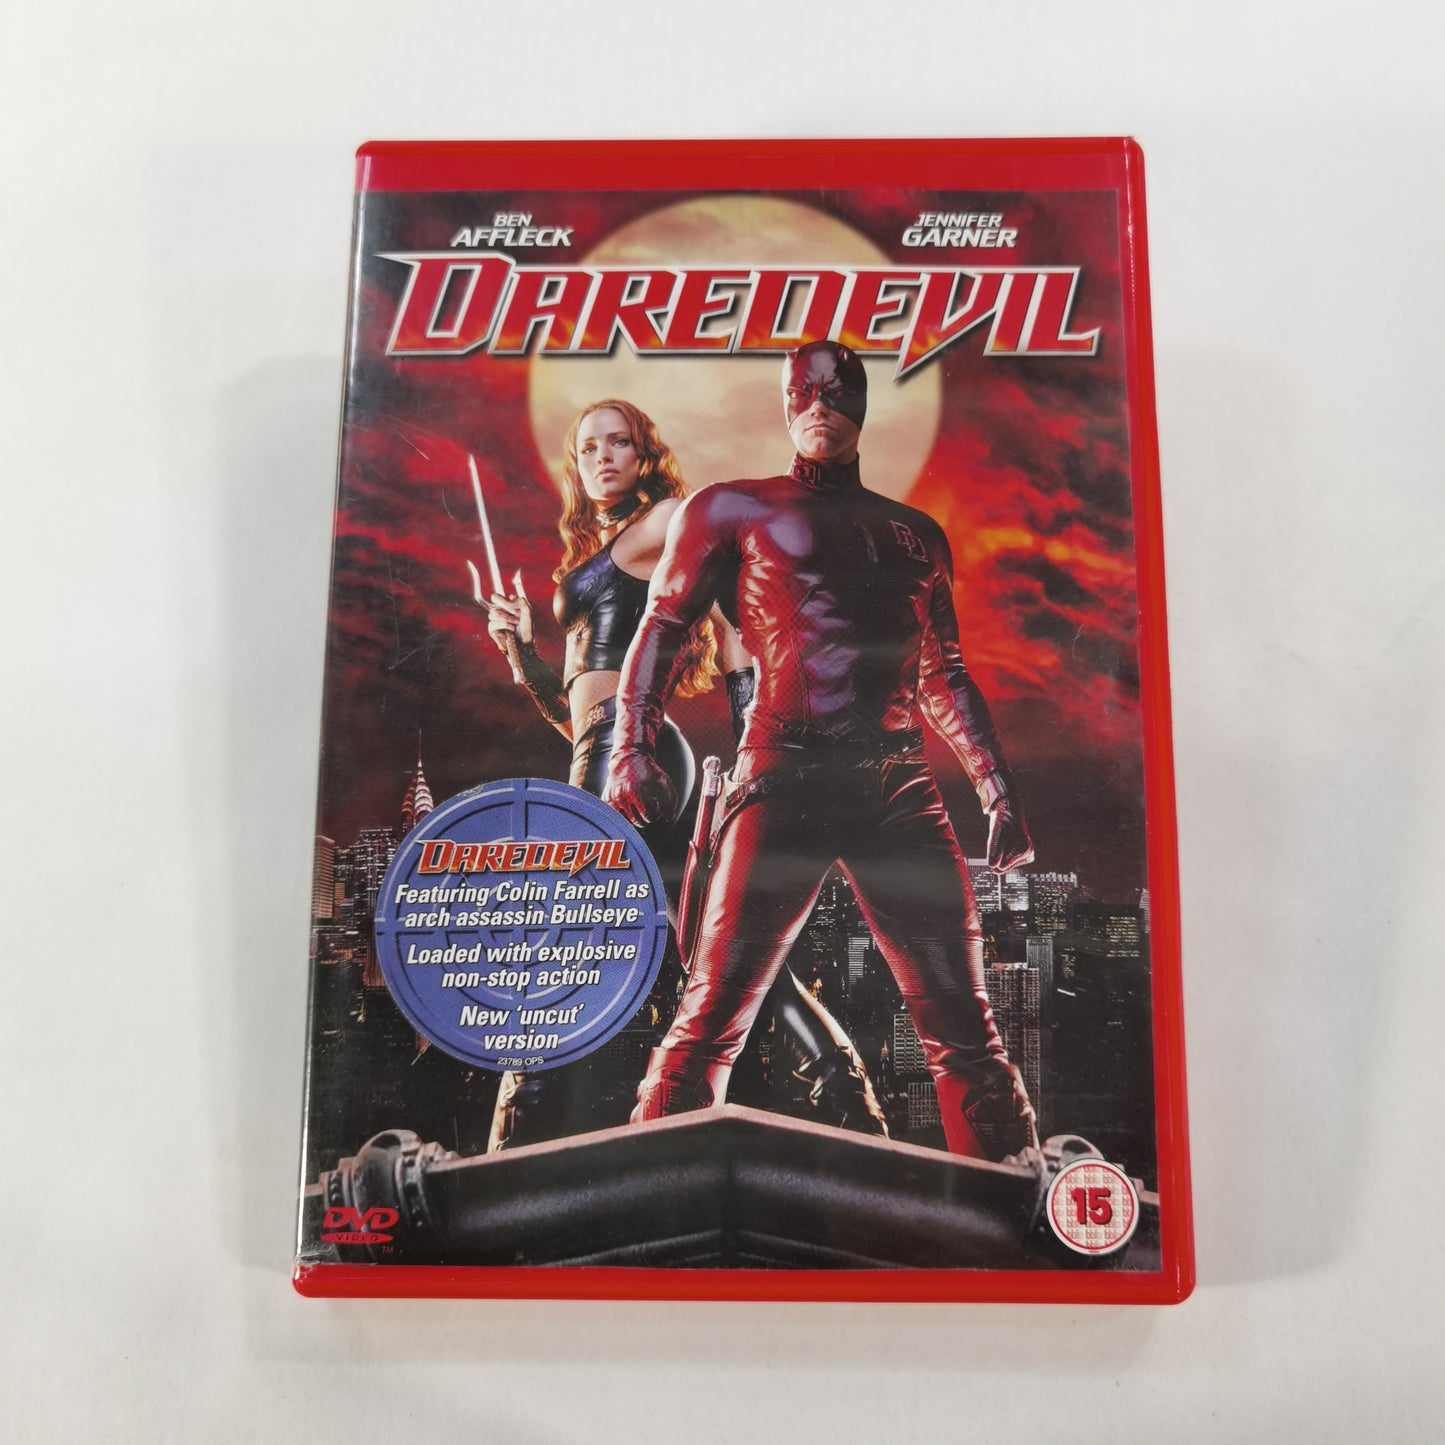 Daredevil (2003) - DVD UK 2003 RC